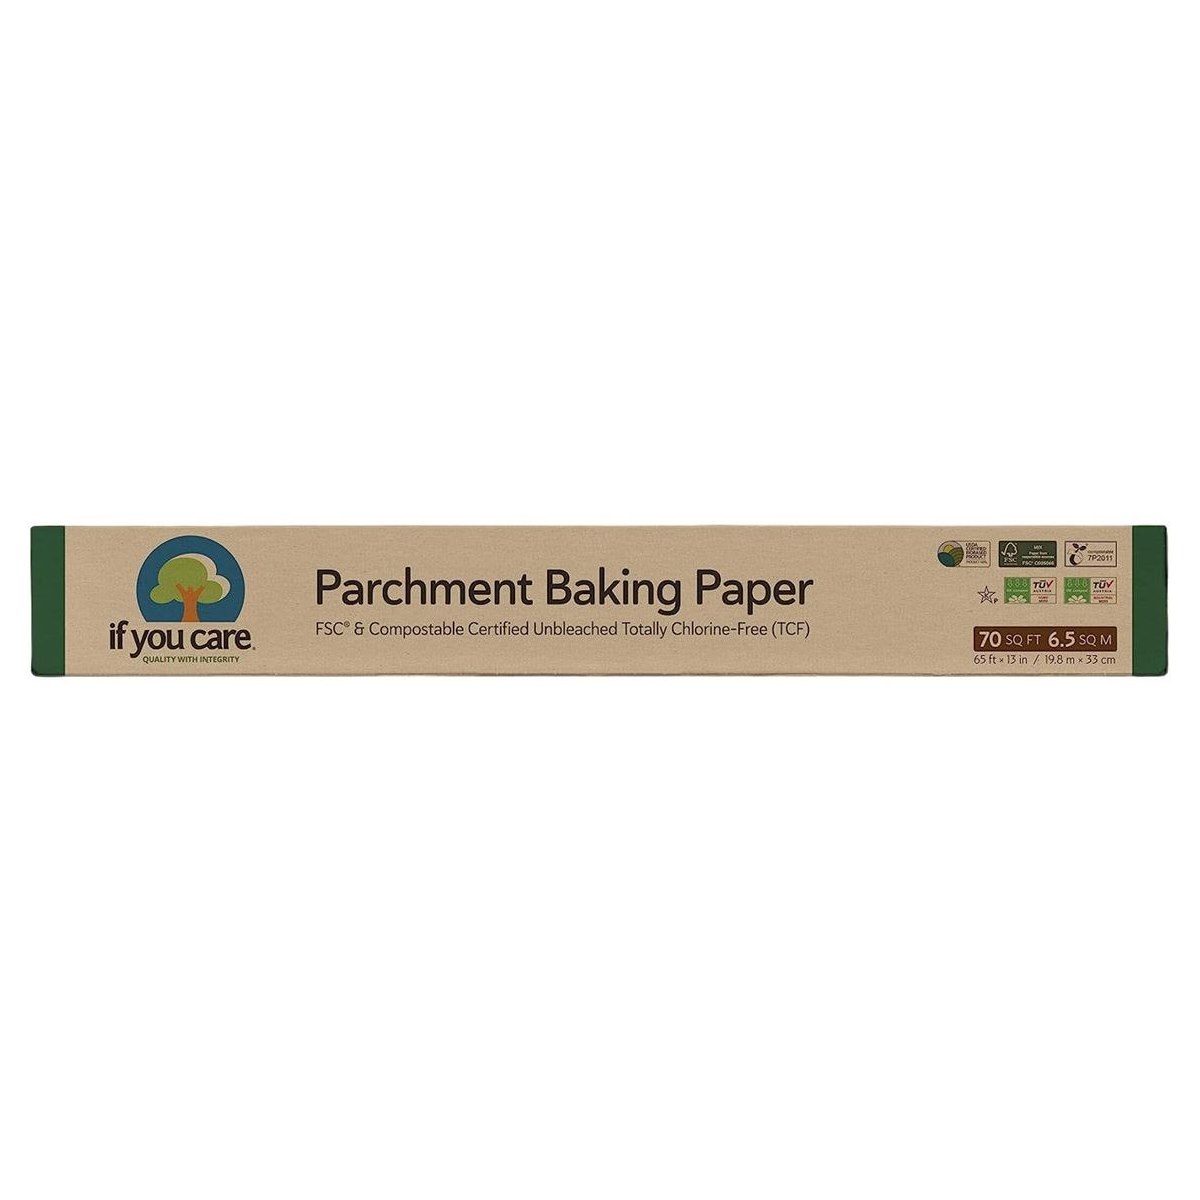 If You Care Parchment Baking Paper 6.5 Sq M 19.8 m x 33 cm